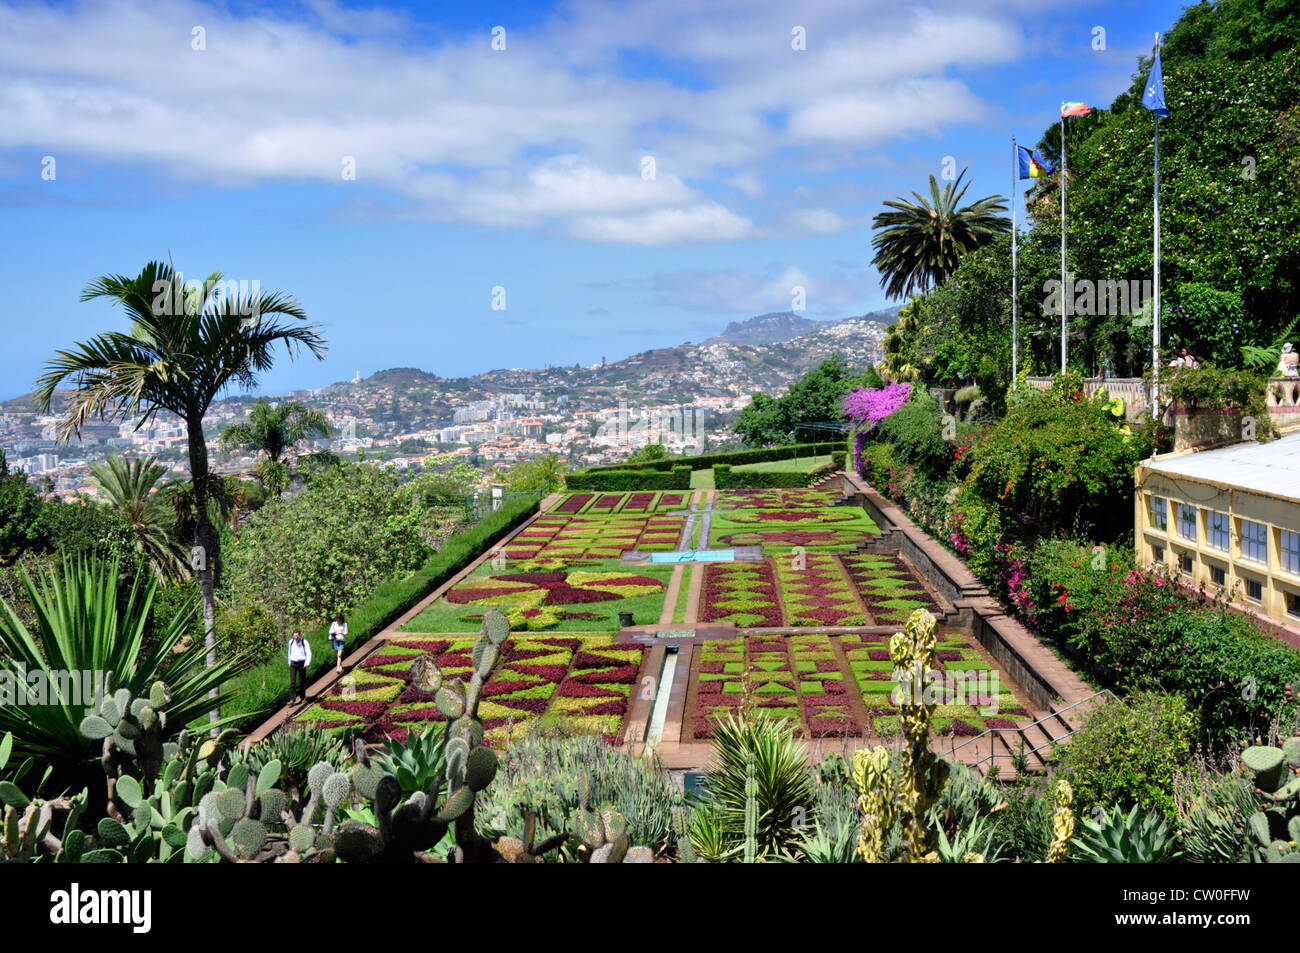 Portugal - Maderira - île de colline au-dessus de Funchal - le Jardin Botanique - exotique et coloré - superbe vue sur mer Banque D'Images